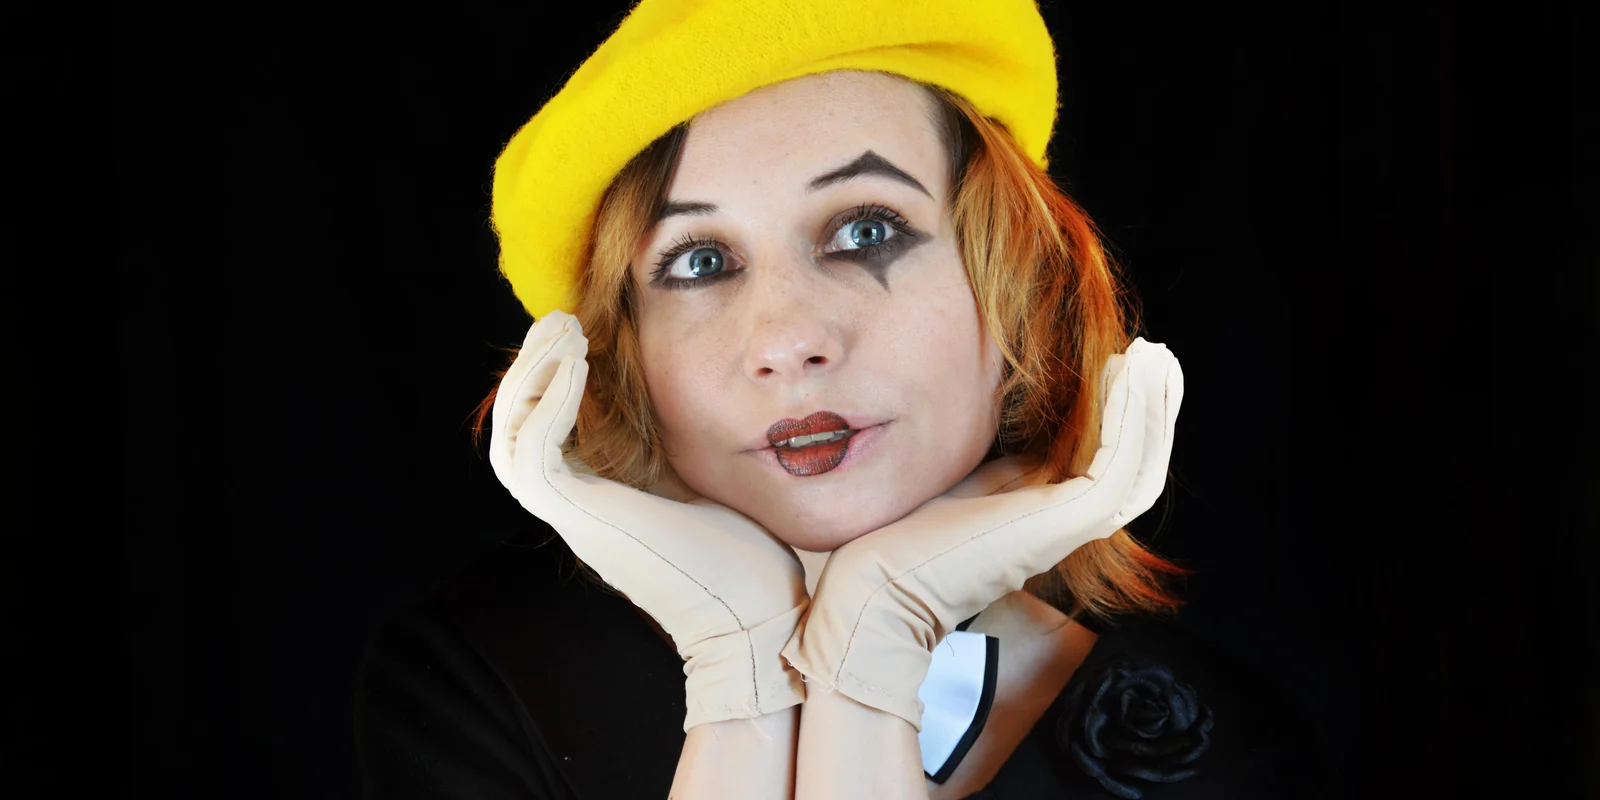 Eine junge Frau mit Clown-Schminke im Gesicht hat ihren Kopf auf ihre Hände gestützt. Sie trägt einen gelben Hut.